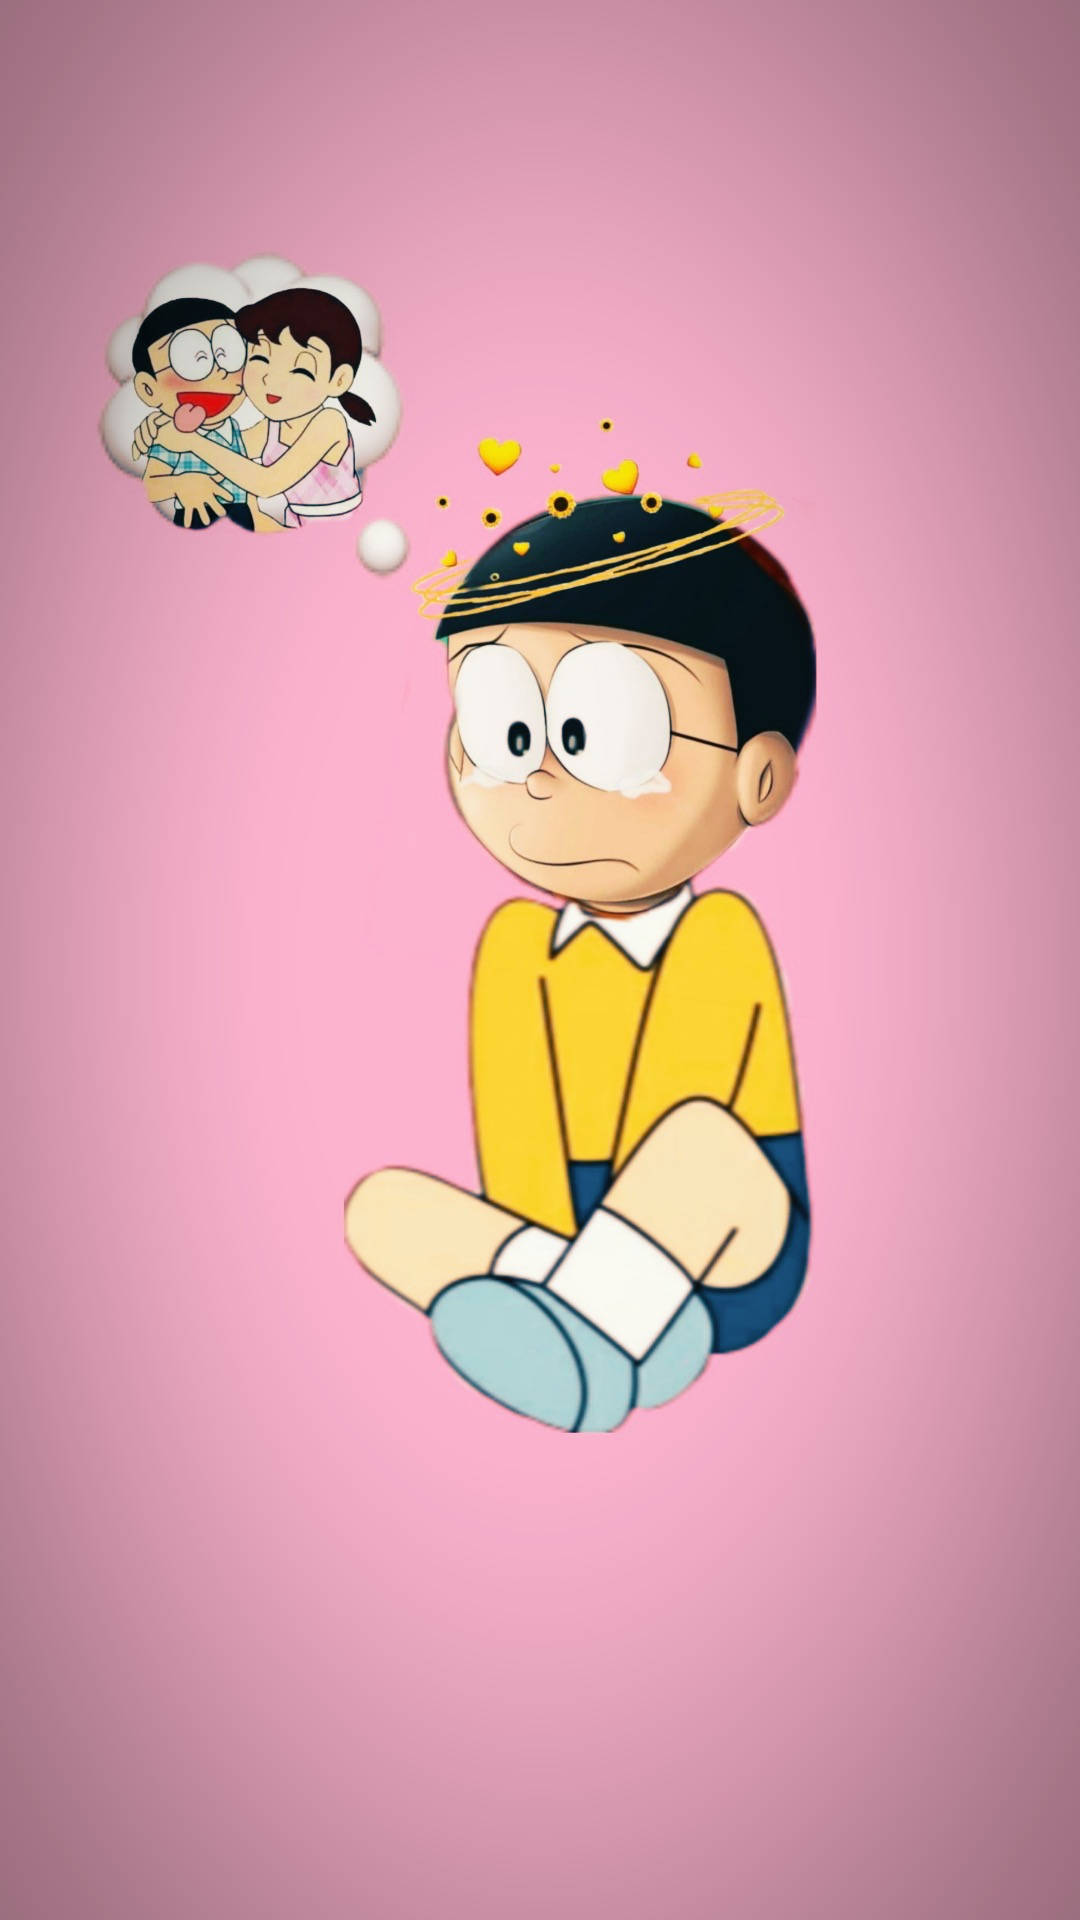 Nobita vốn được biết đến là nhân vật chính trong loạt manga huyền thoại Doraemon, với tính cách lẩu bài và tinh nghịch trẻ con. Nếu bạn cũng là một fan của Nobita, tại sao không trang trí cho điện thoại của mình một bức ảnh nền độc đáo với hình ảnh của anh chàng này? Đến ngay với chúng tôi để khám phá những bức ảnh nền Nobita đẹp nhất nhé!